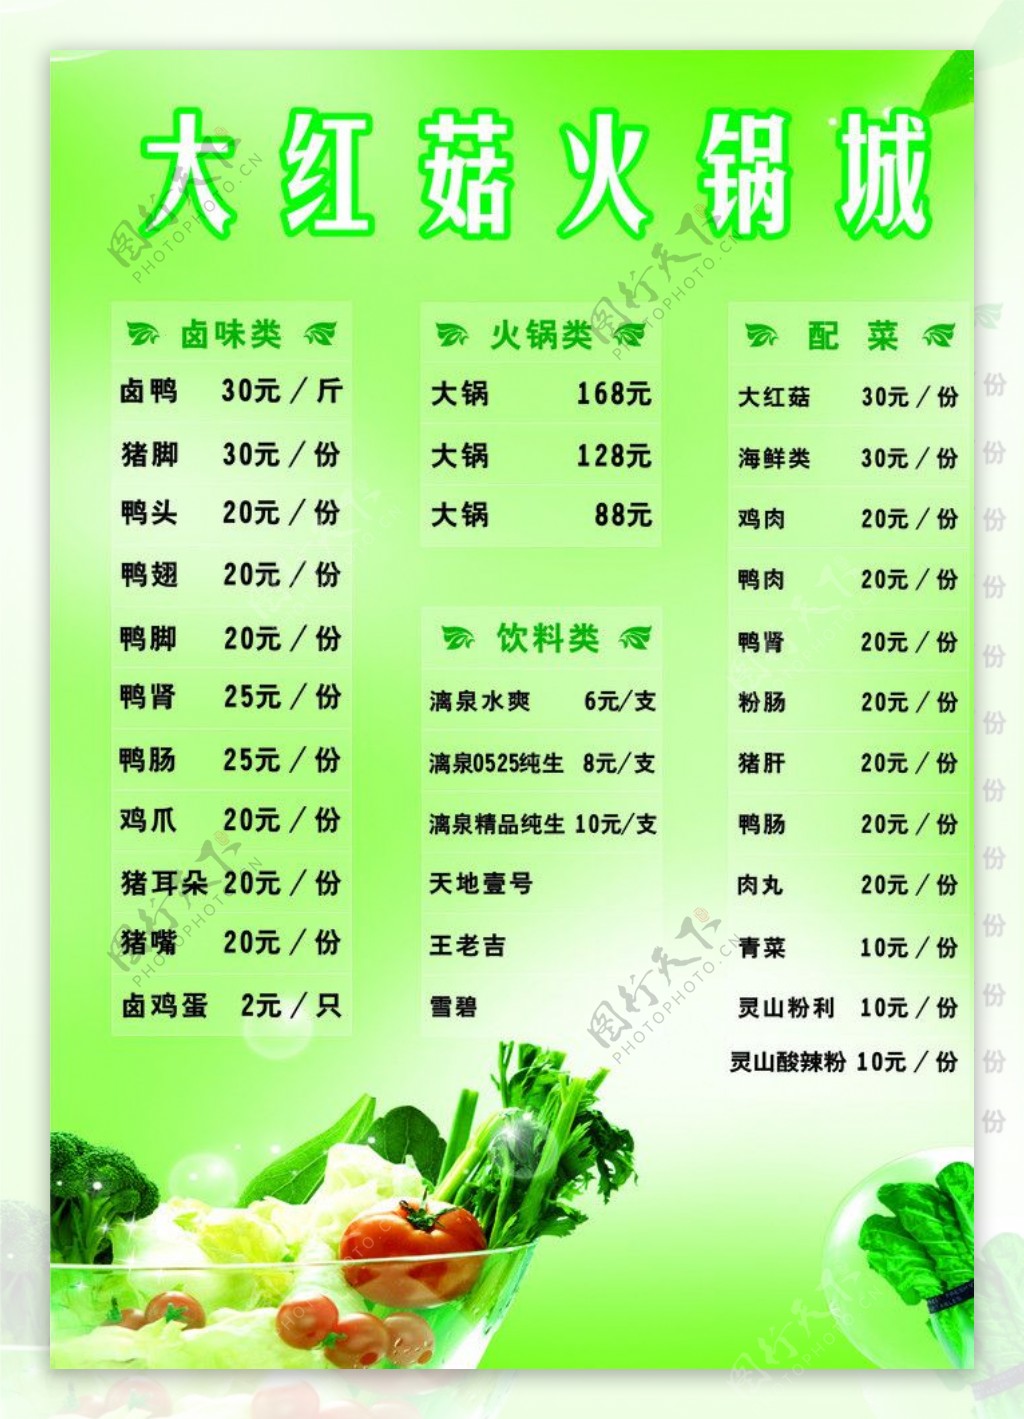 大红菇火锅城菜单图片